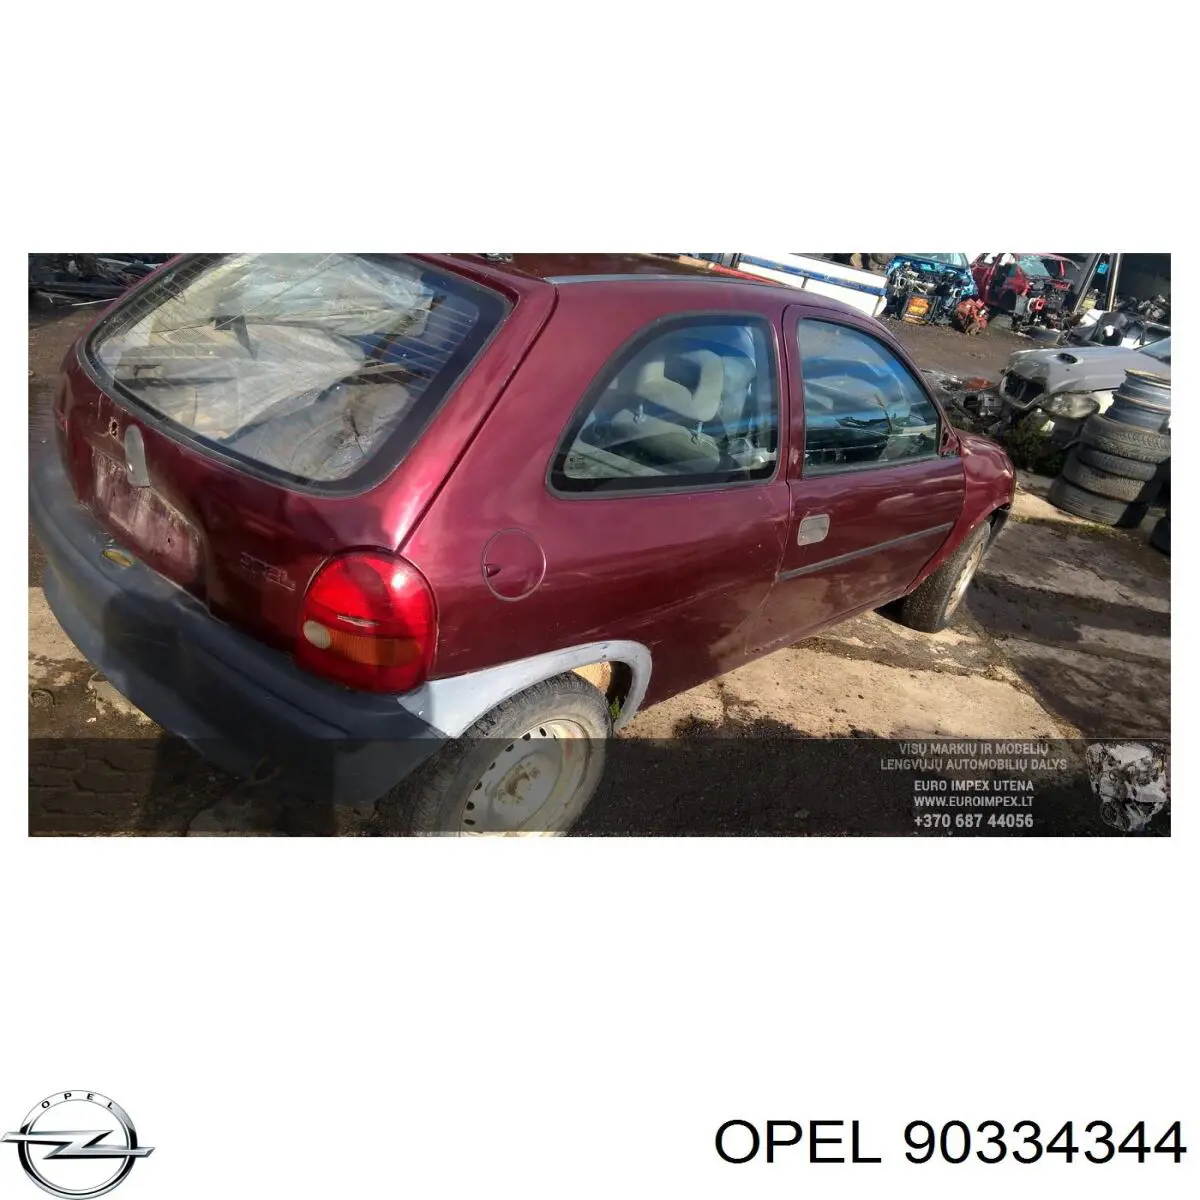 Caja de cambios mecánica, completa para Opel Corsa (91, 92, 96, 97)